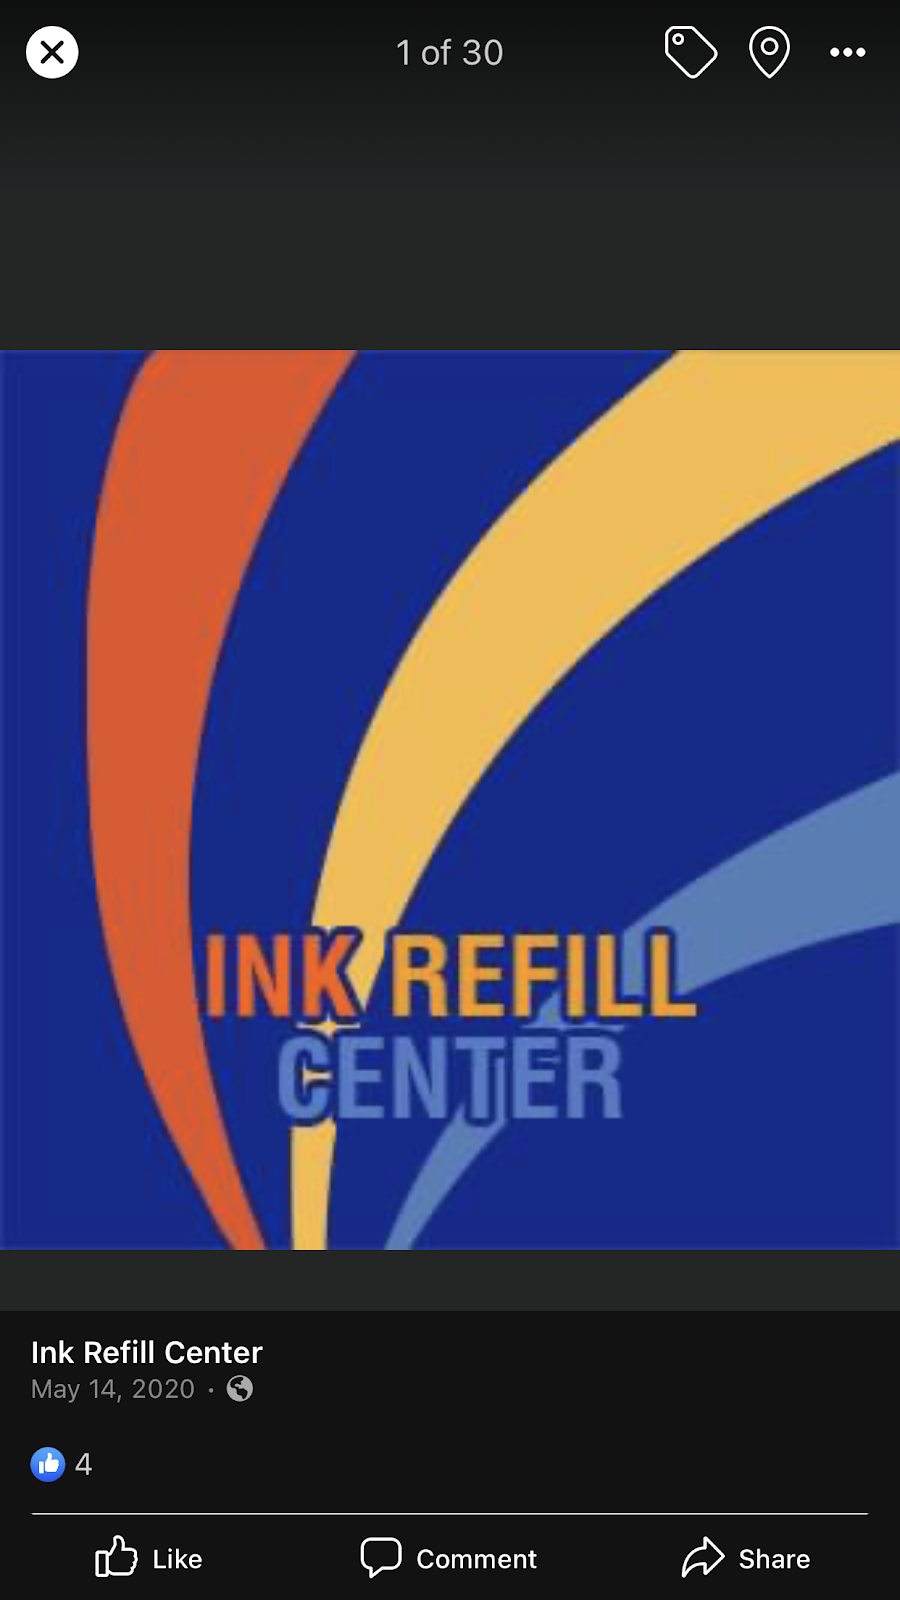 Ink Refill Center | 3488 Deltona Blvd, Spring Hill, FL 34606, USA | Phone: (352) 683-1940